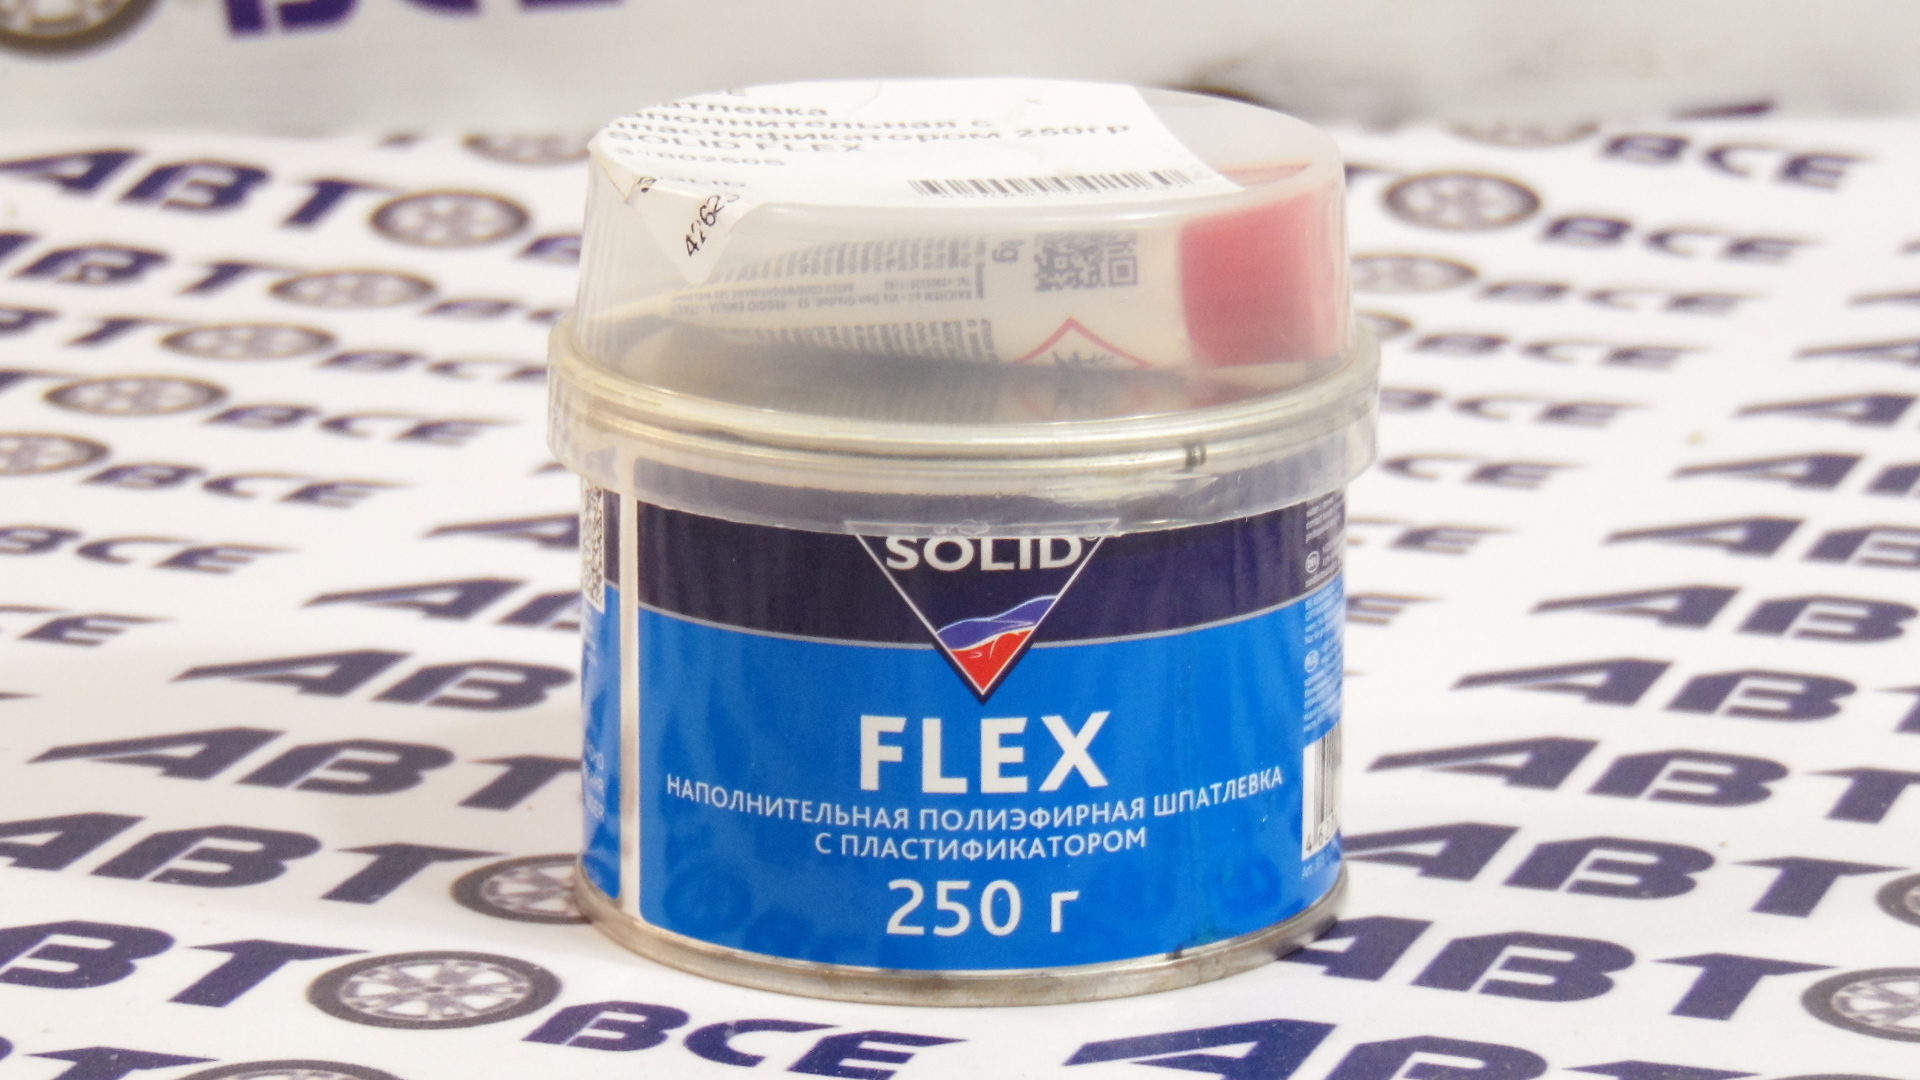 Шпатлевка наполнительная с пластификатором 250гр FLEX SOLID